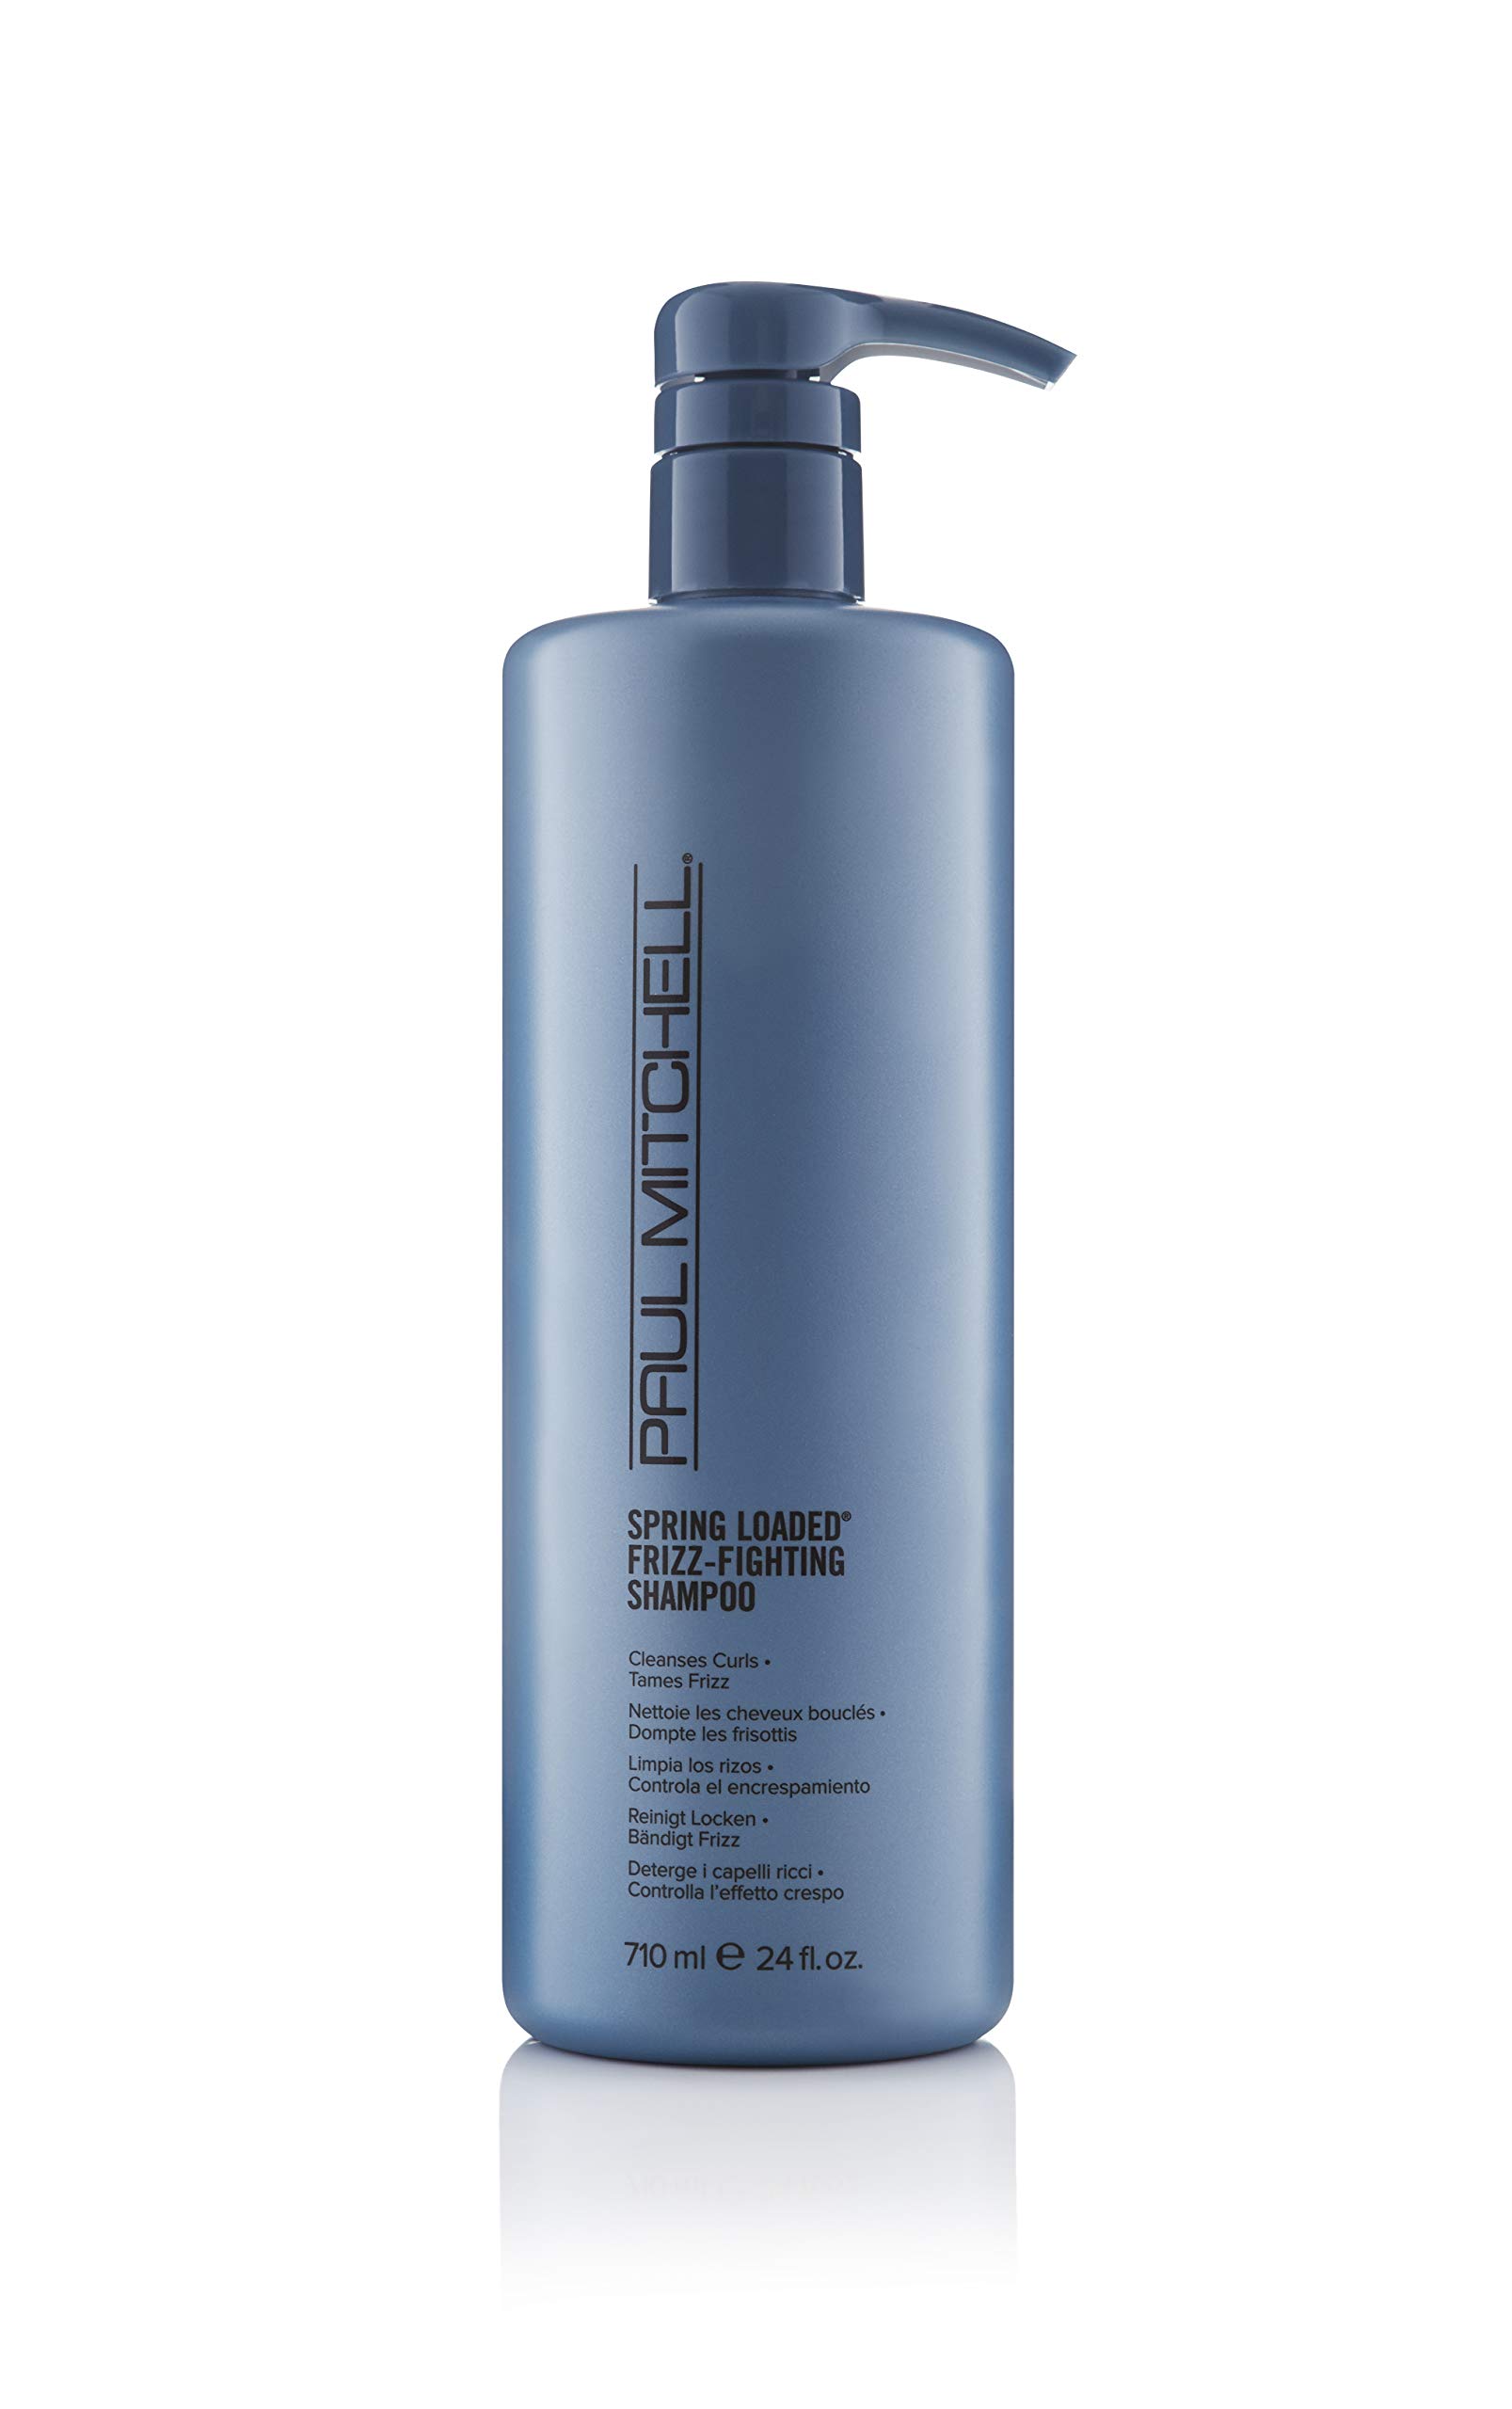 Paul Mitchell Spring Loaded Frizz-Fighting Shampoo - Haar-Reinigung für Locken und welliges Haar, sulfatfreies Shampoo mit Anti-Frizz Effekt, 710 ml